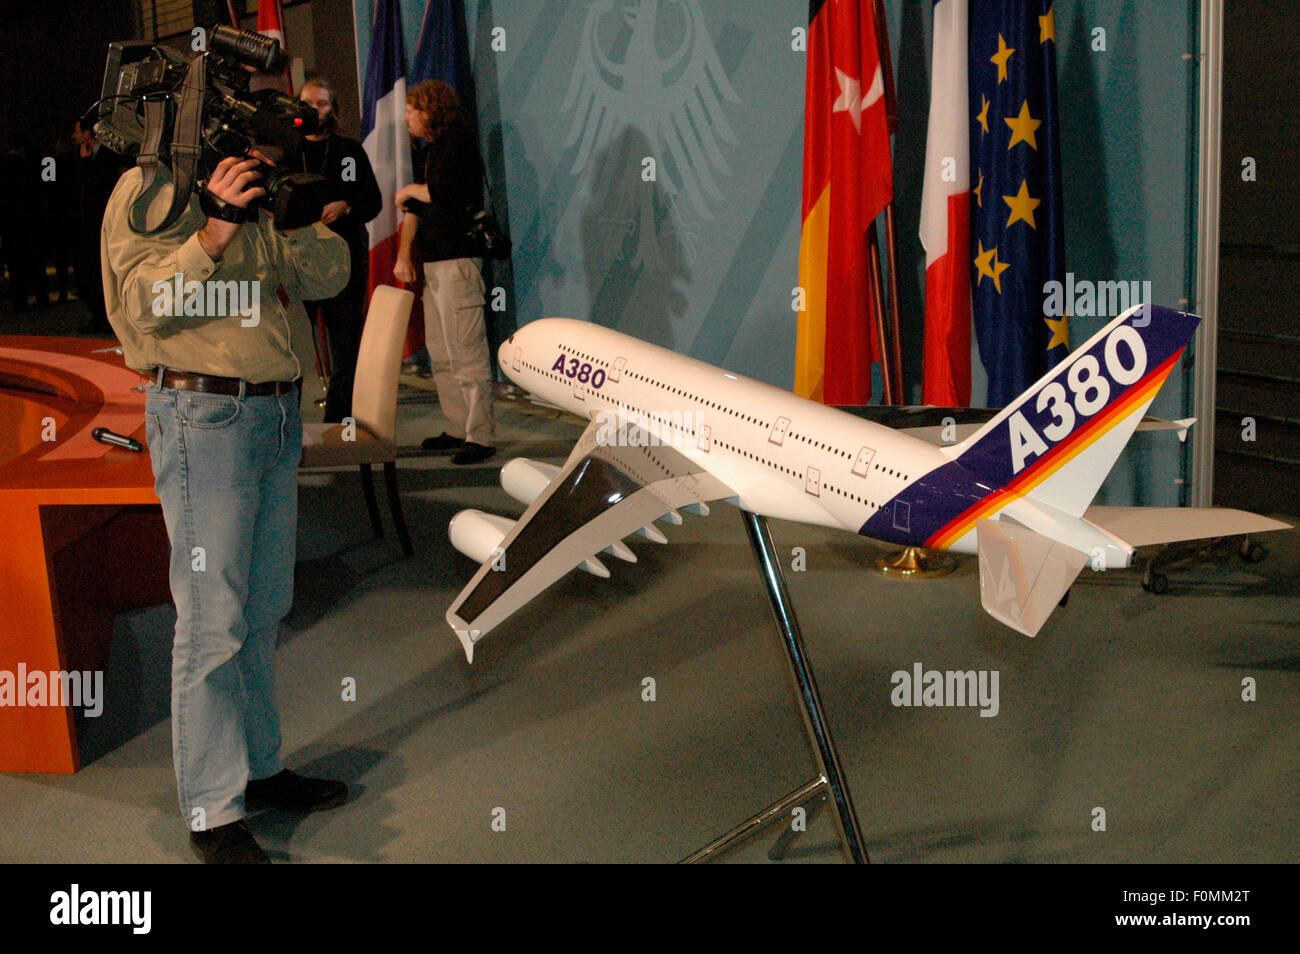 Modell des Airbus A 380 - deutsch-franzoesische Konsultationen mit Beteuiligung des EU-Beitrittsaspiranten Tuerkei am 26. Oktobe Stock Photo